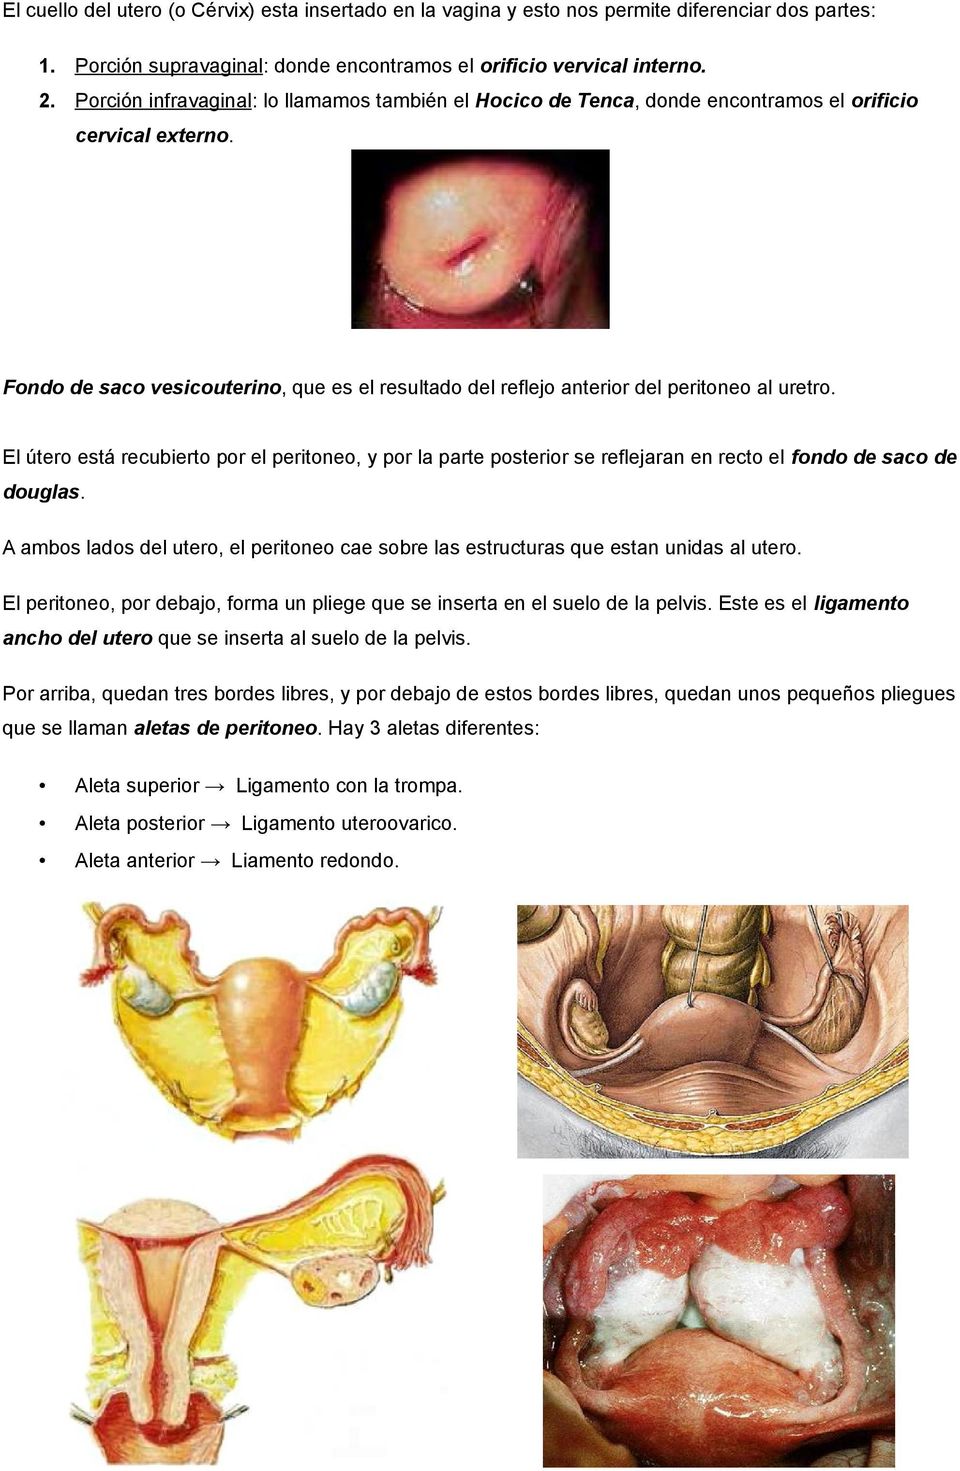 Fondo de saco vesicouterino, que es el resultado del reflejo anterior del peritoneo al uretro.